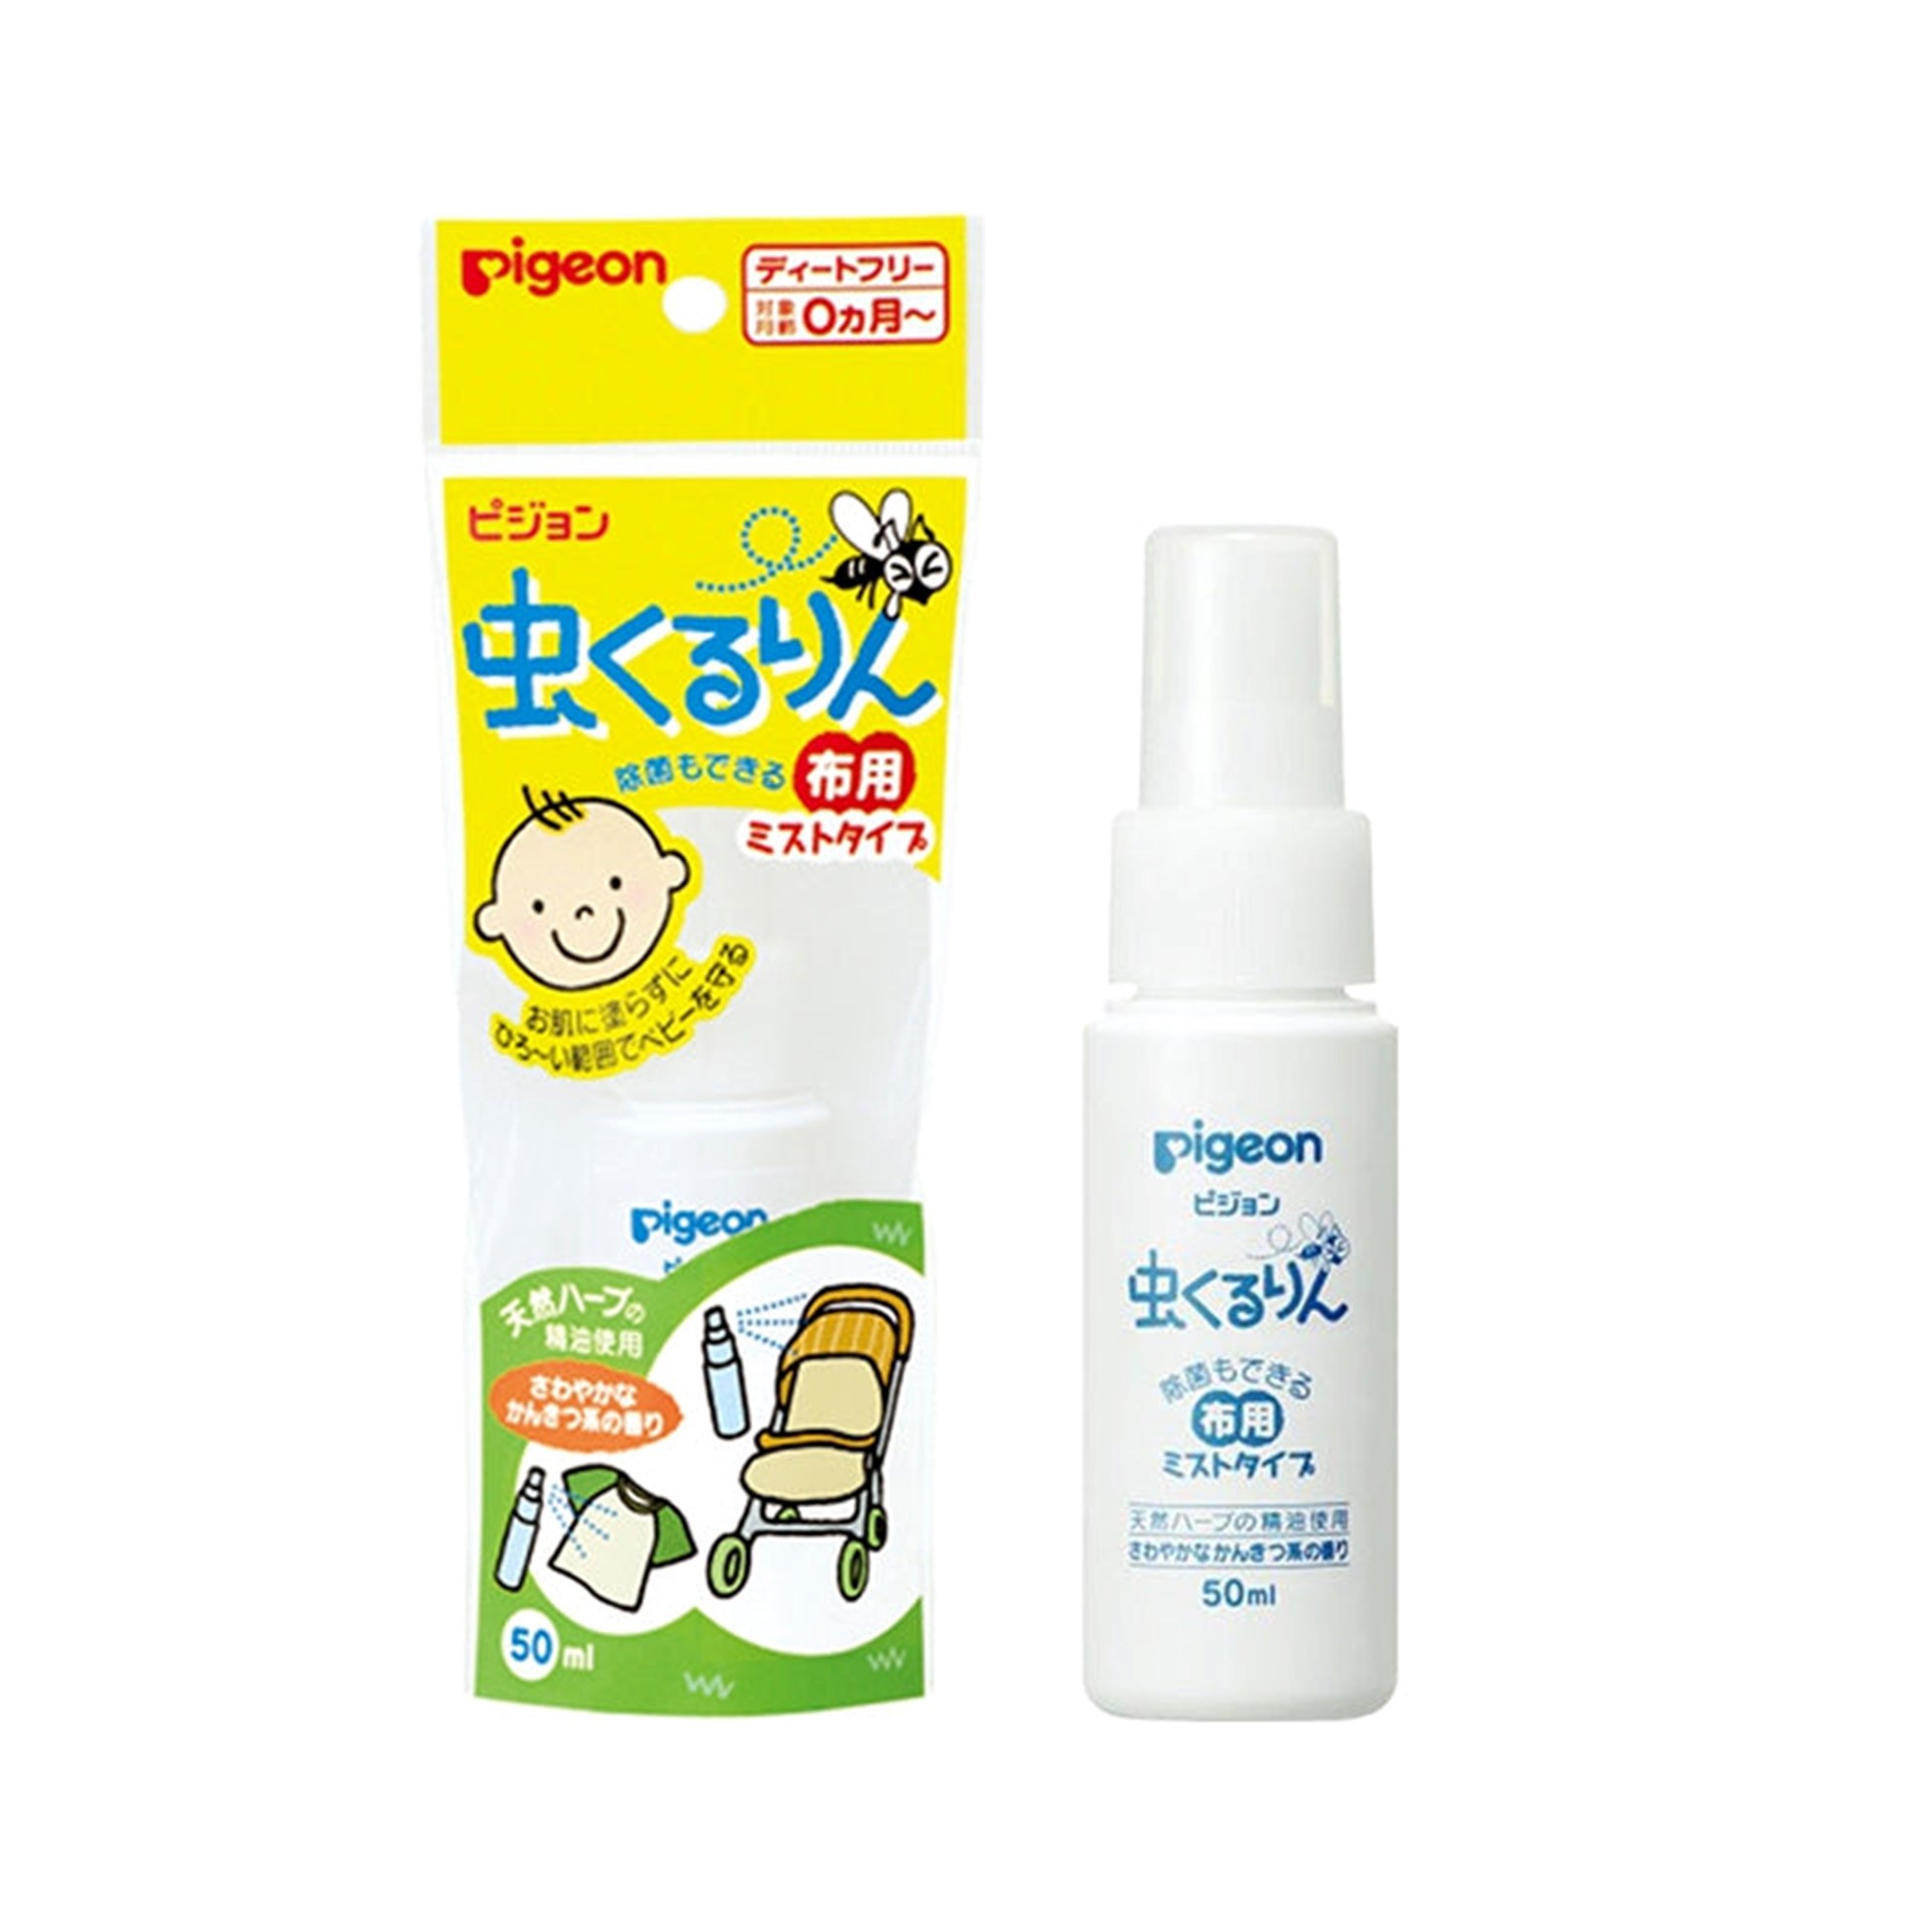 日本贝亲 | 婴幼儿专用 | 纯植物驱蚊喷雾 | 50ml | Mosquito repellent spray